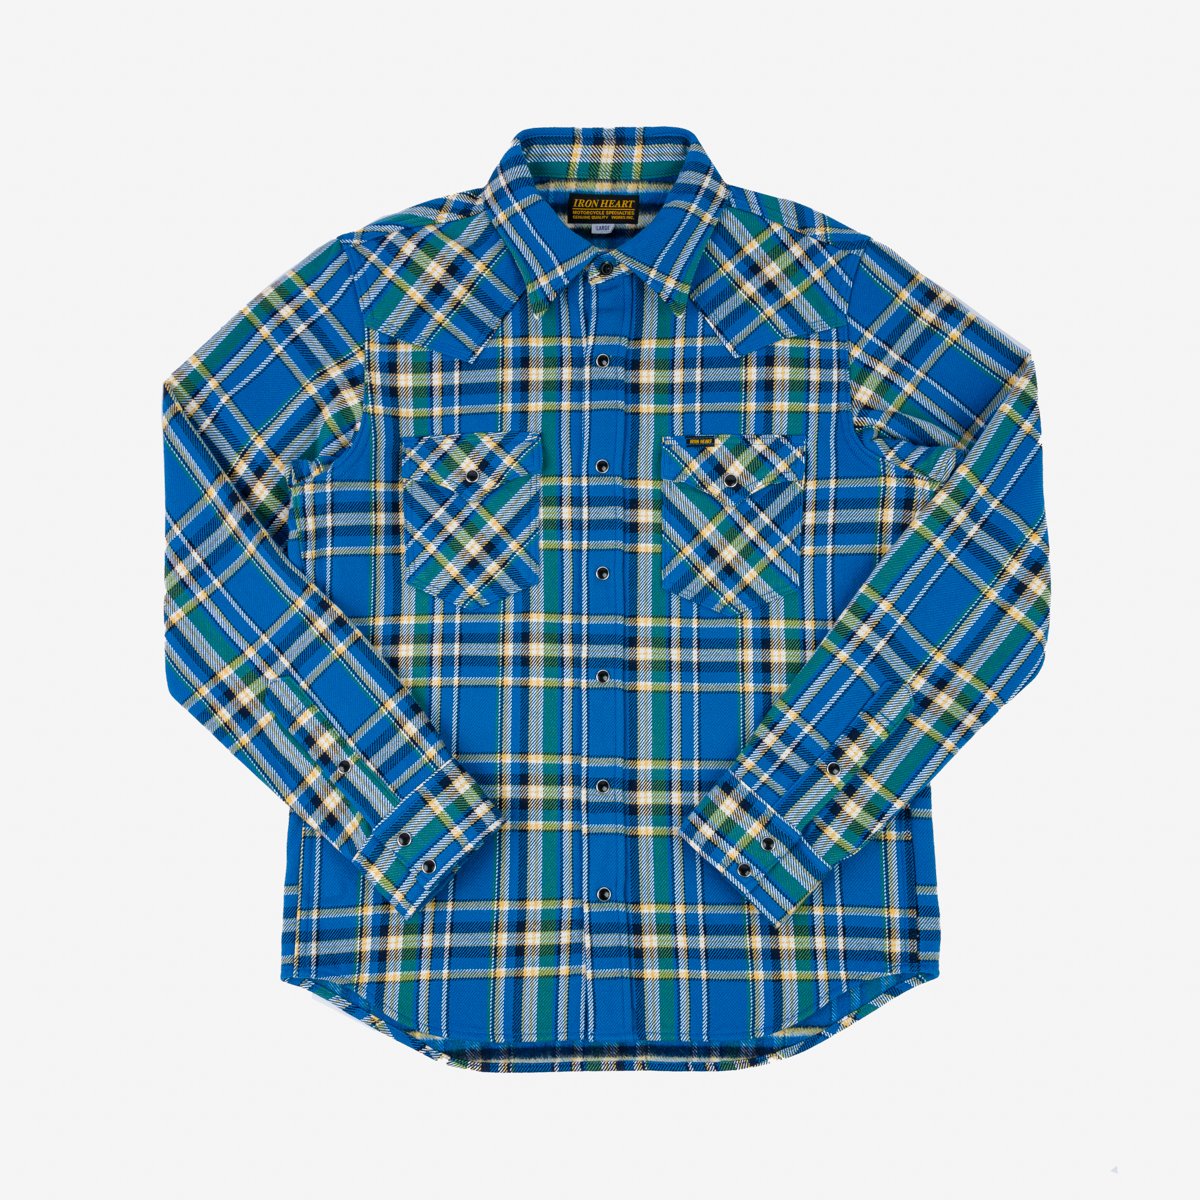 IHSH-370-BLU Ultra Heavy Flannel Tartan Check Western Shirt Blue